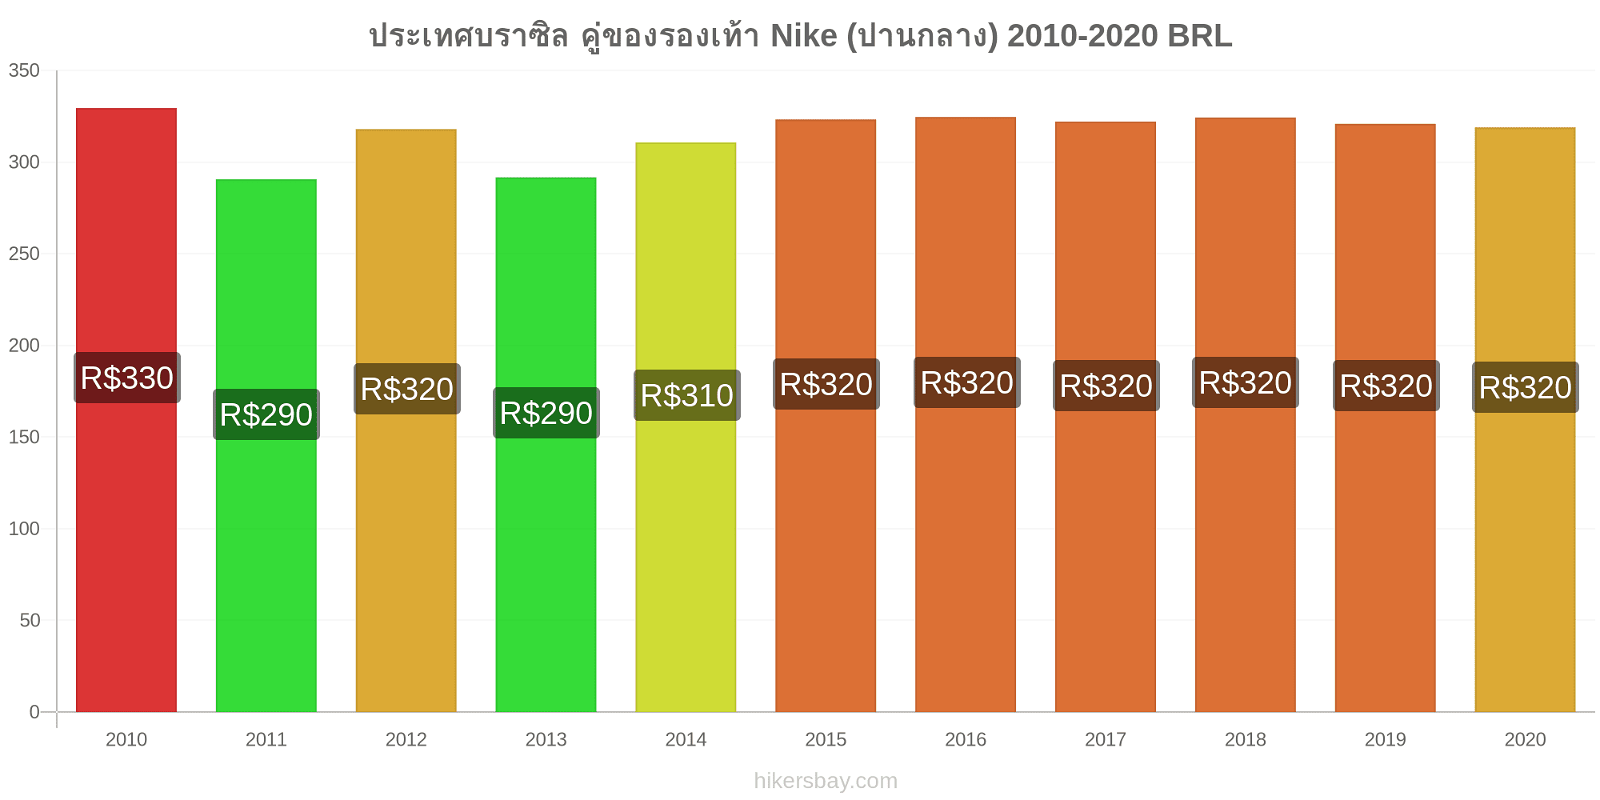 ประเทศบราซิล การเปลี่ยนแปลงราคา คู่ของรองเท้า Nike (ปานกลาง) hikersbay.com